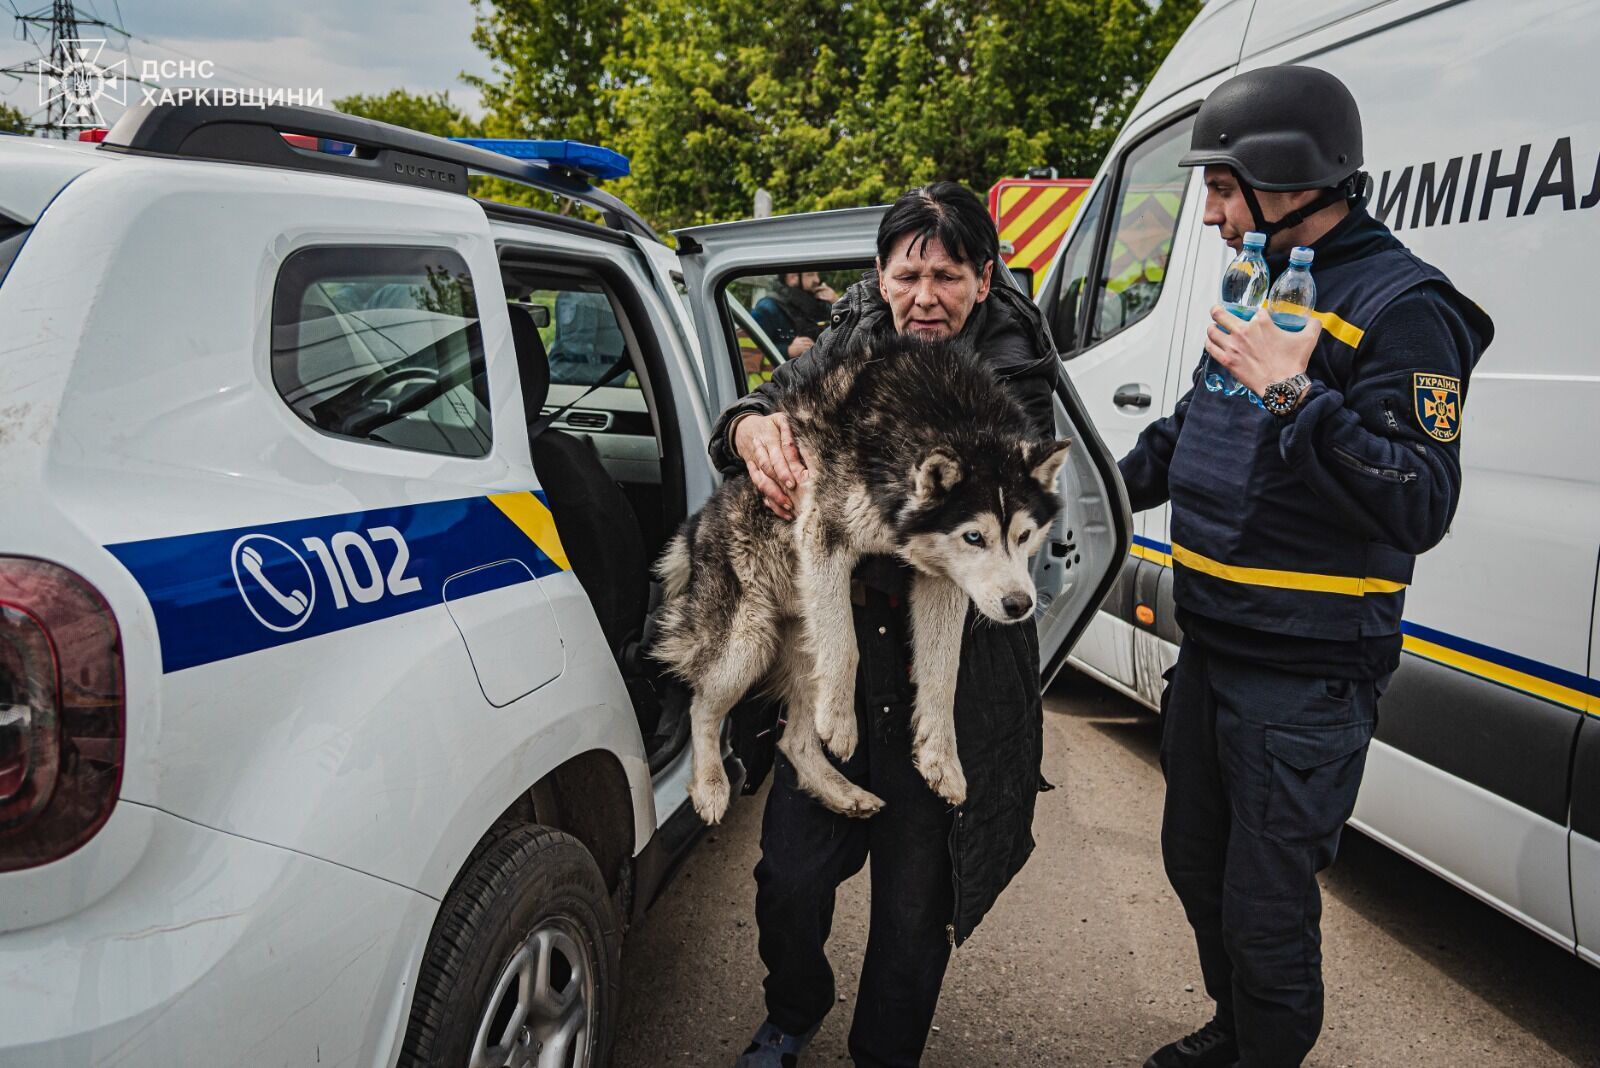  Із прикордоння Харківщини евакуювали близько 8000 цивільних: з ними працюють психологи. Фото і відео